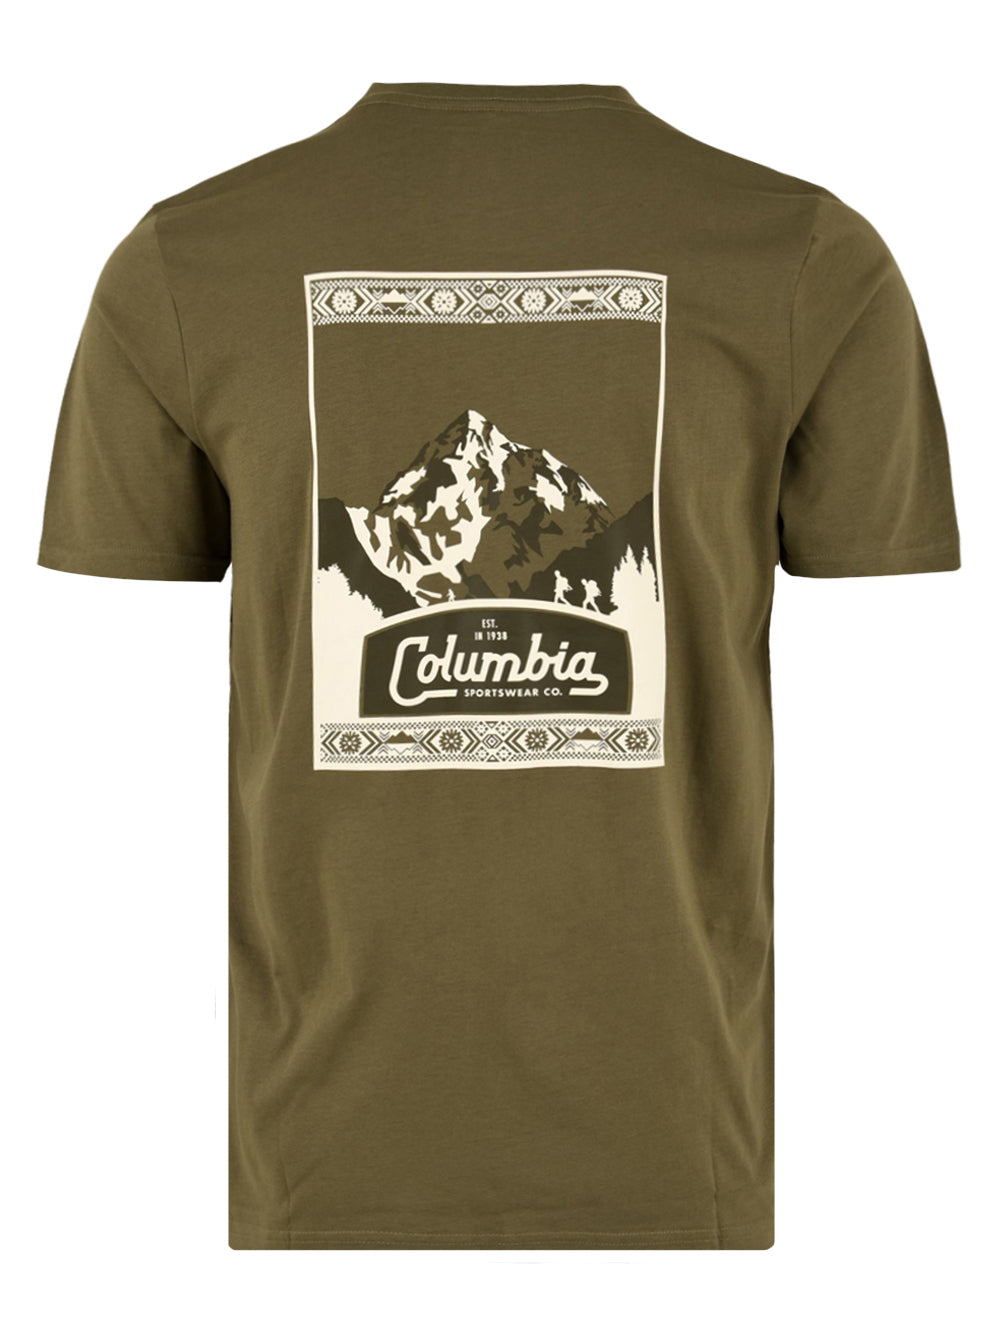 Immagine retro della T-shirt da uomo Columbia con stampa in verde e bianco raffigurate una montagna.